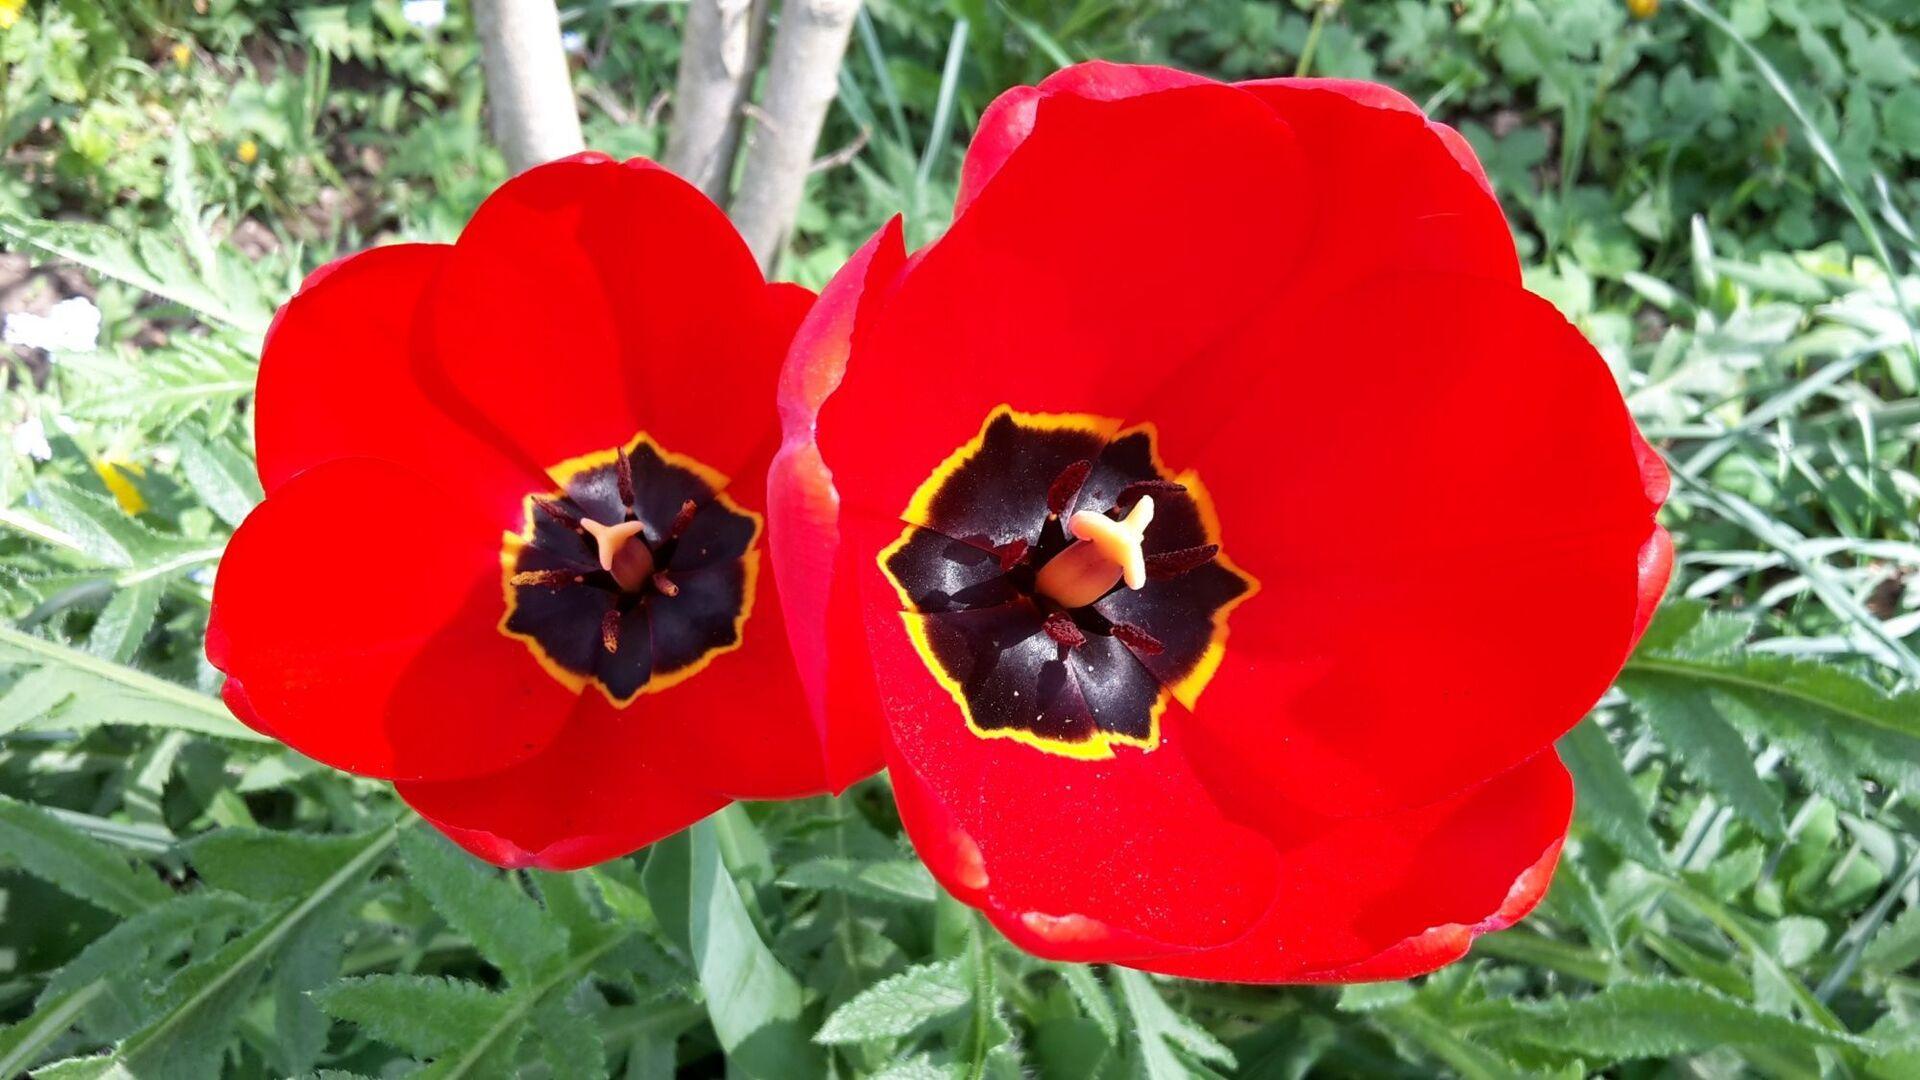 tulipány otevřely své kalichy